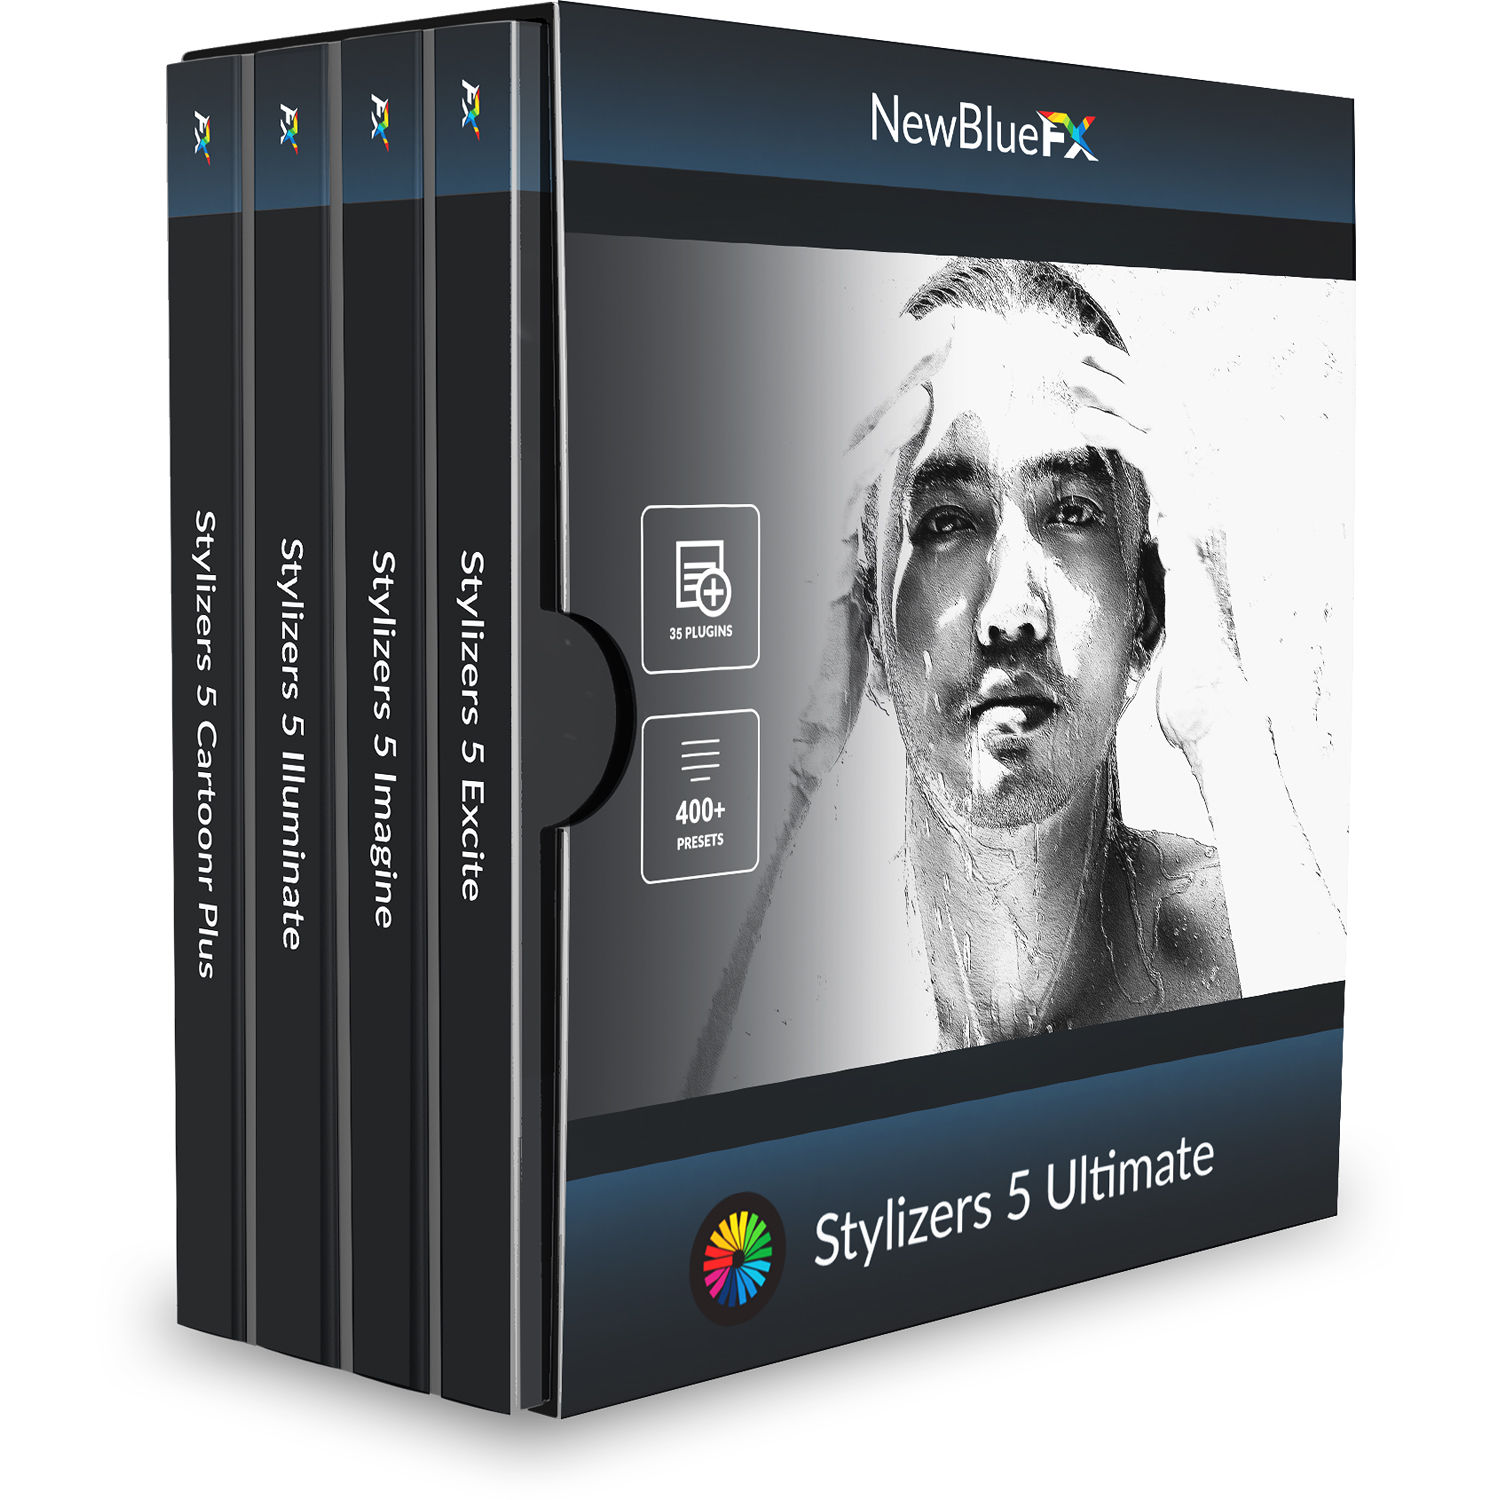 Newbluefx For Mac